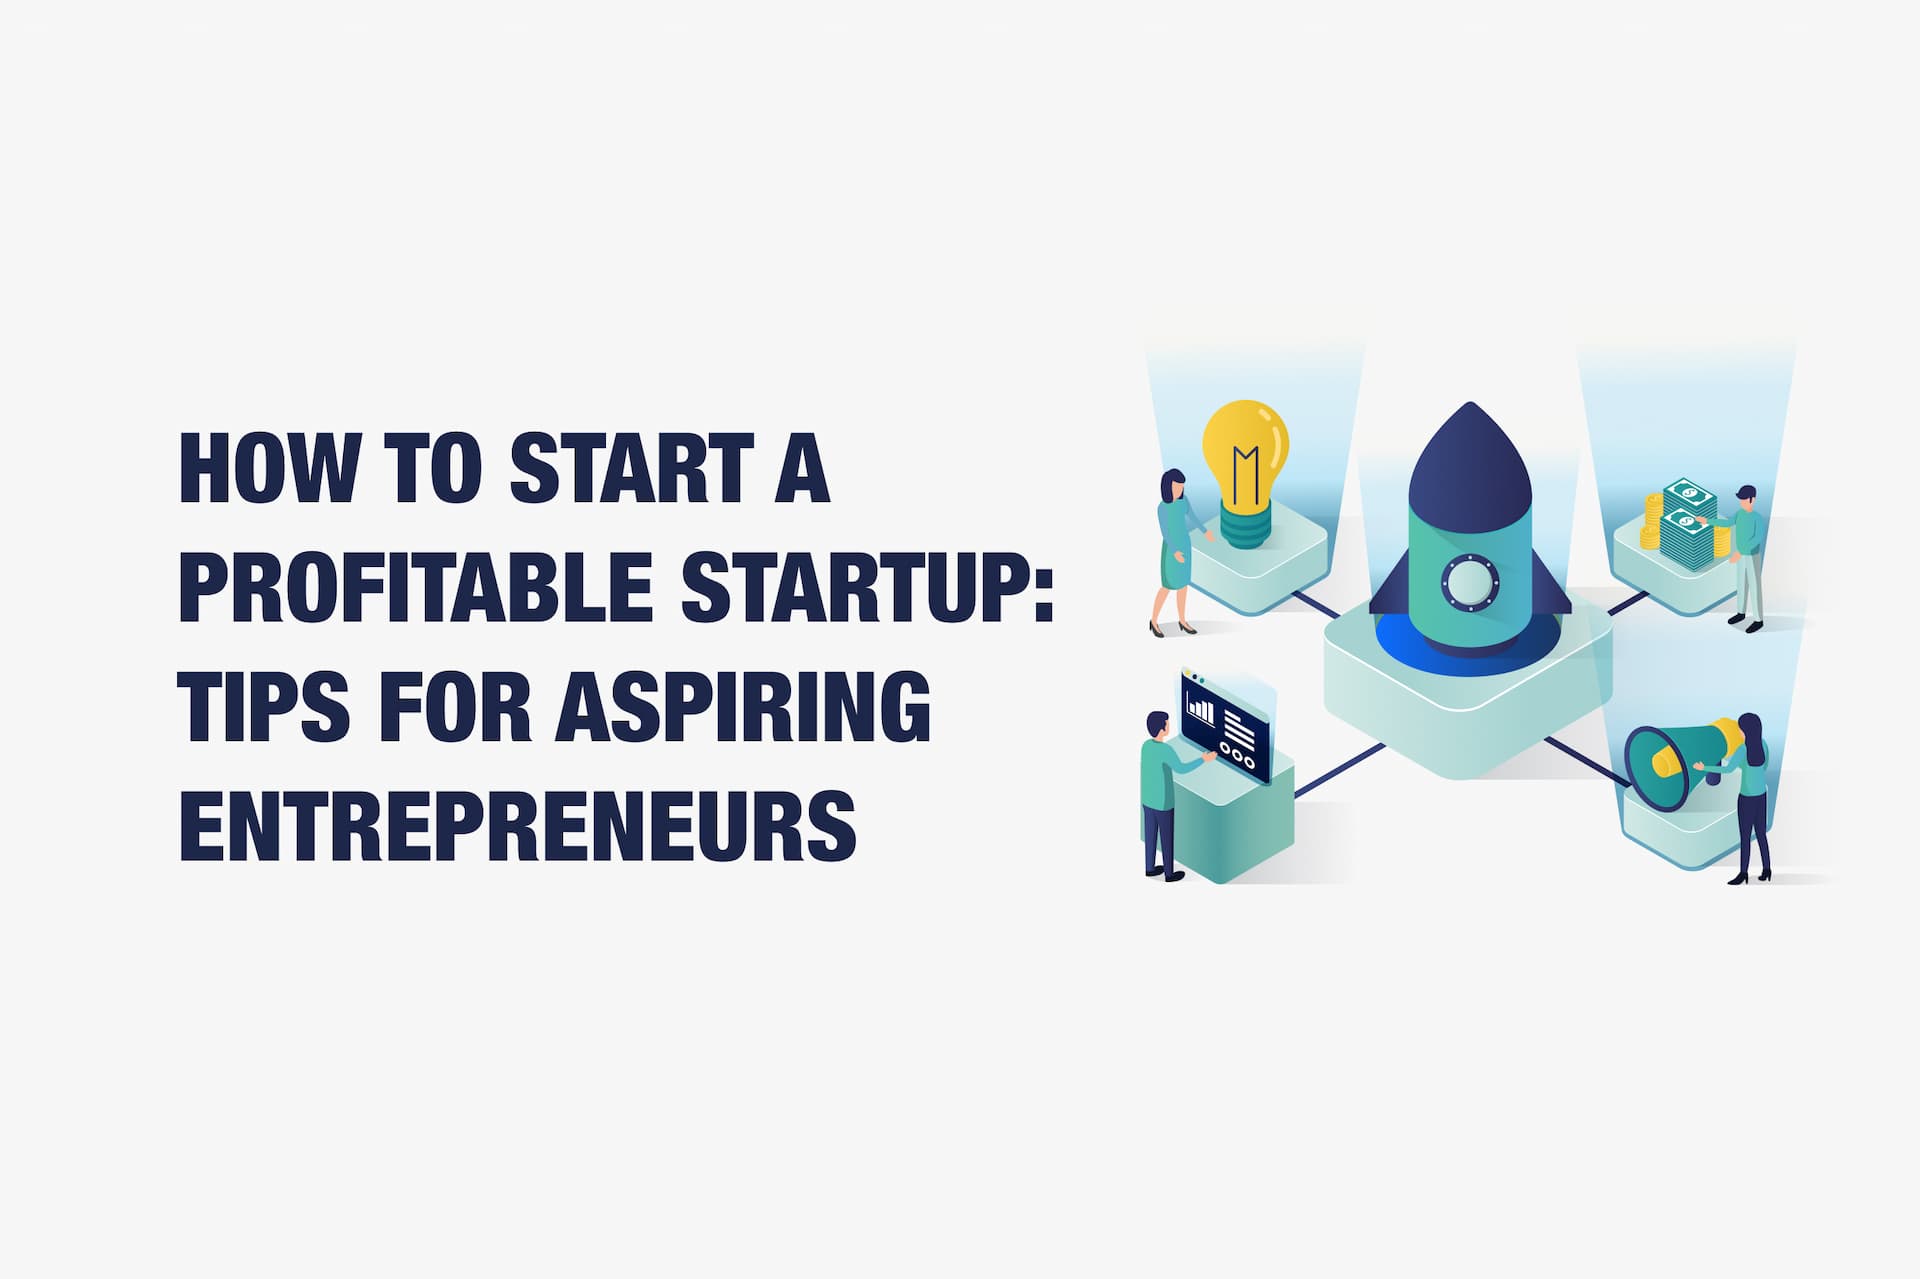 How to Start a Profitable Startup: Tips for Aspiring Entrepreneurs